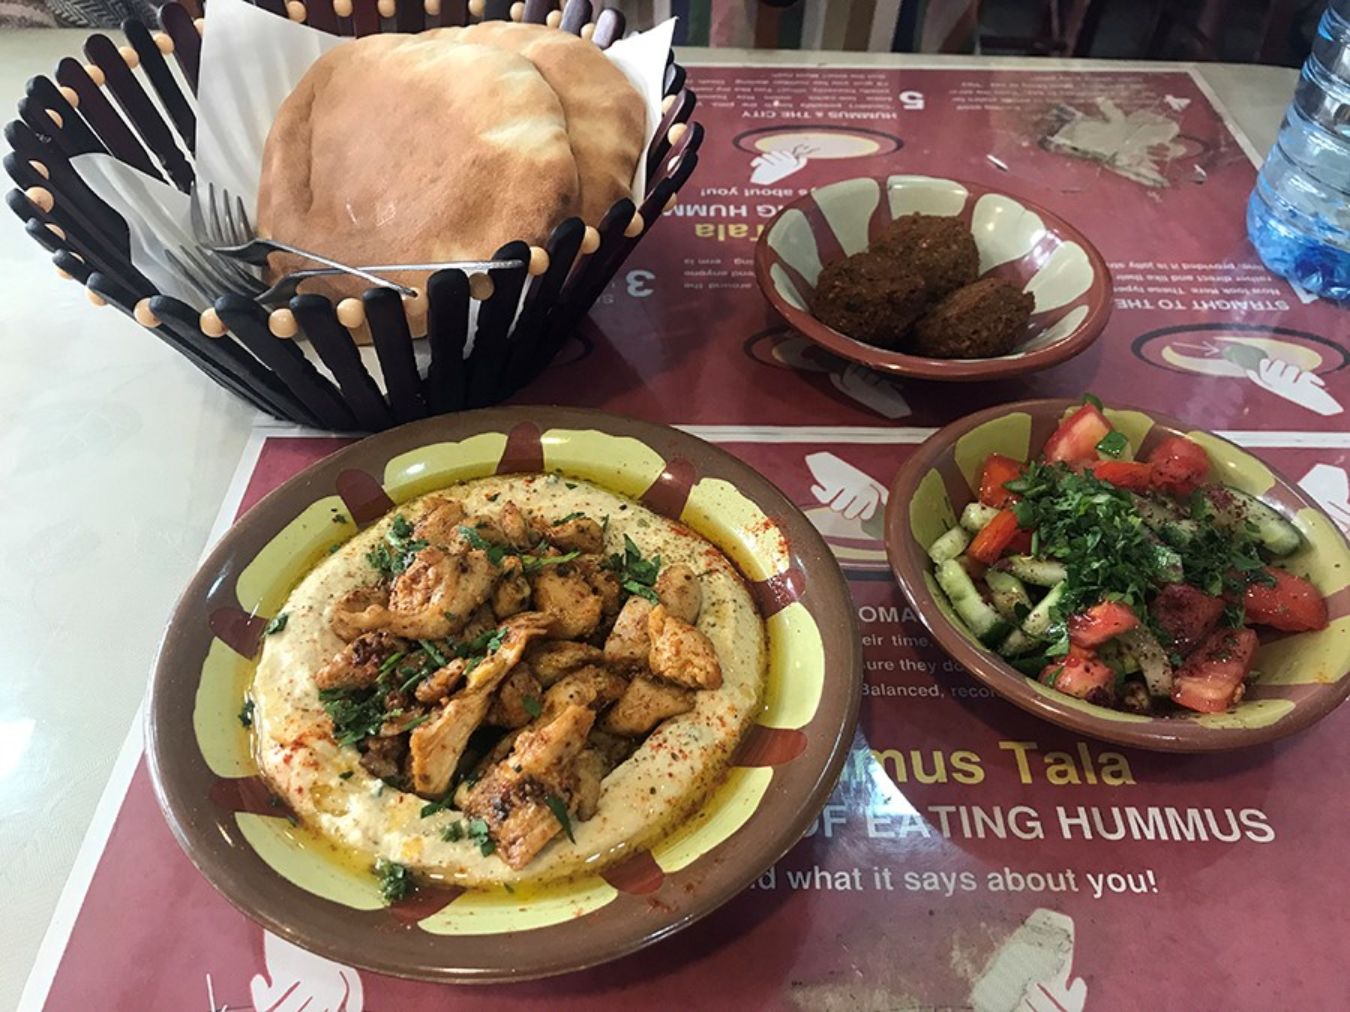 Comida típica de Israel, hummus, falafel y kebab